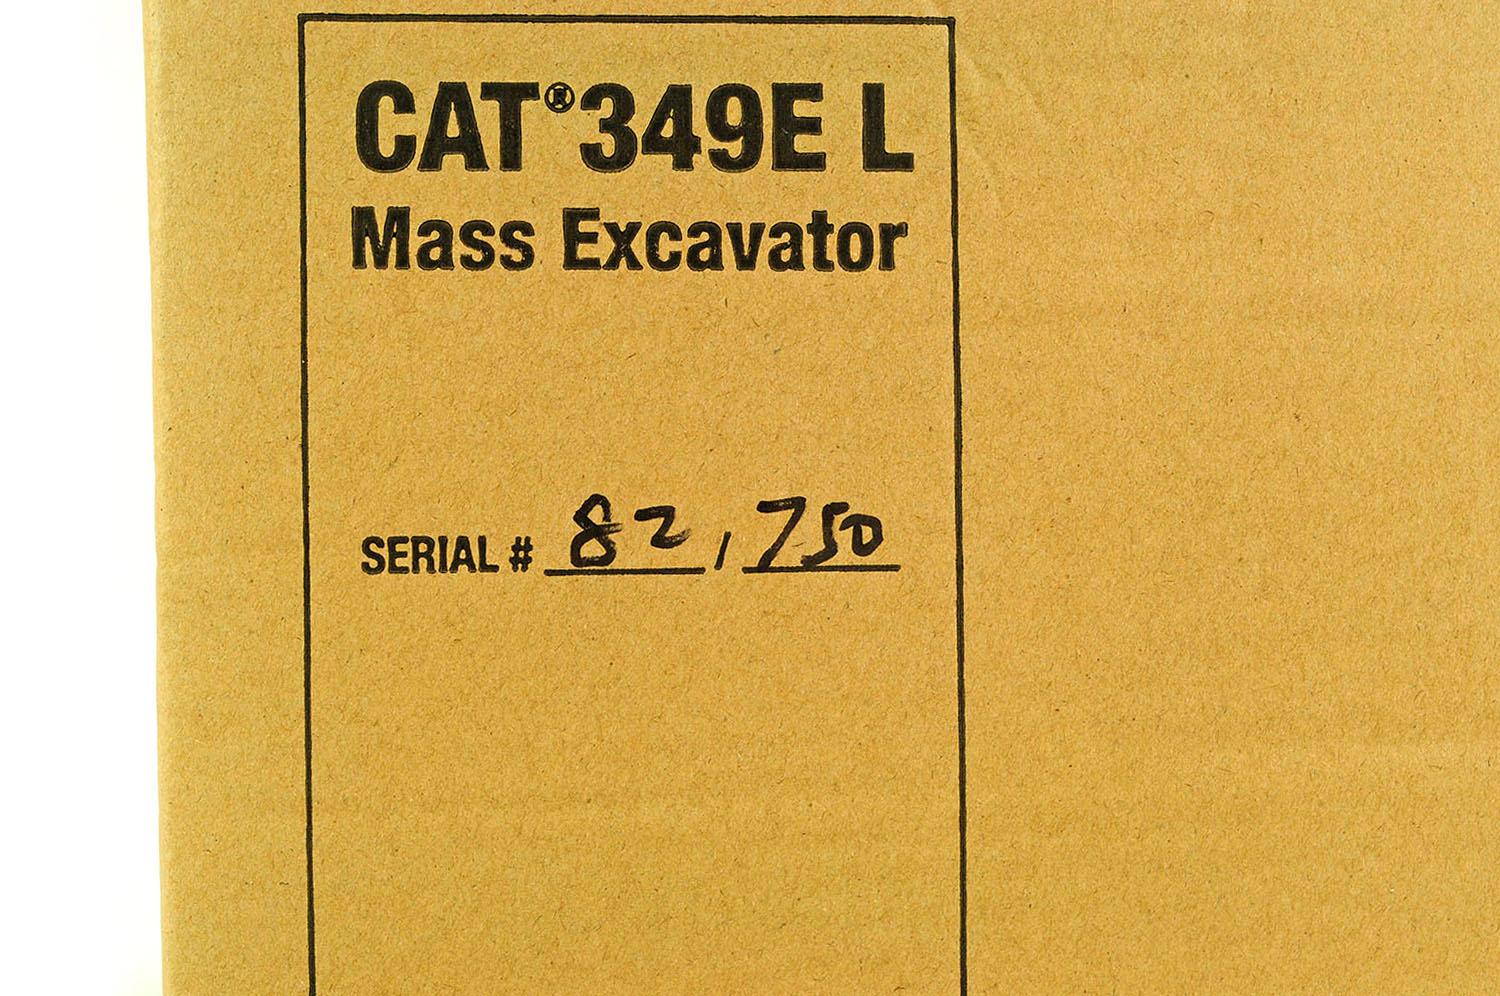 Caterpillar 349EL Mass Excavator